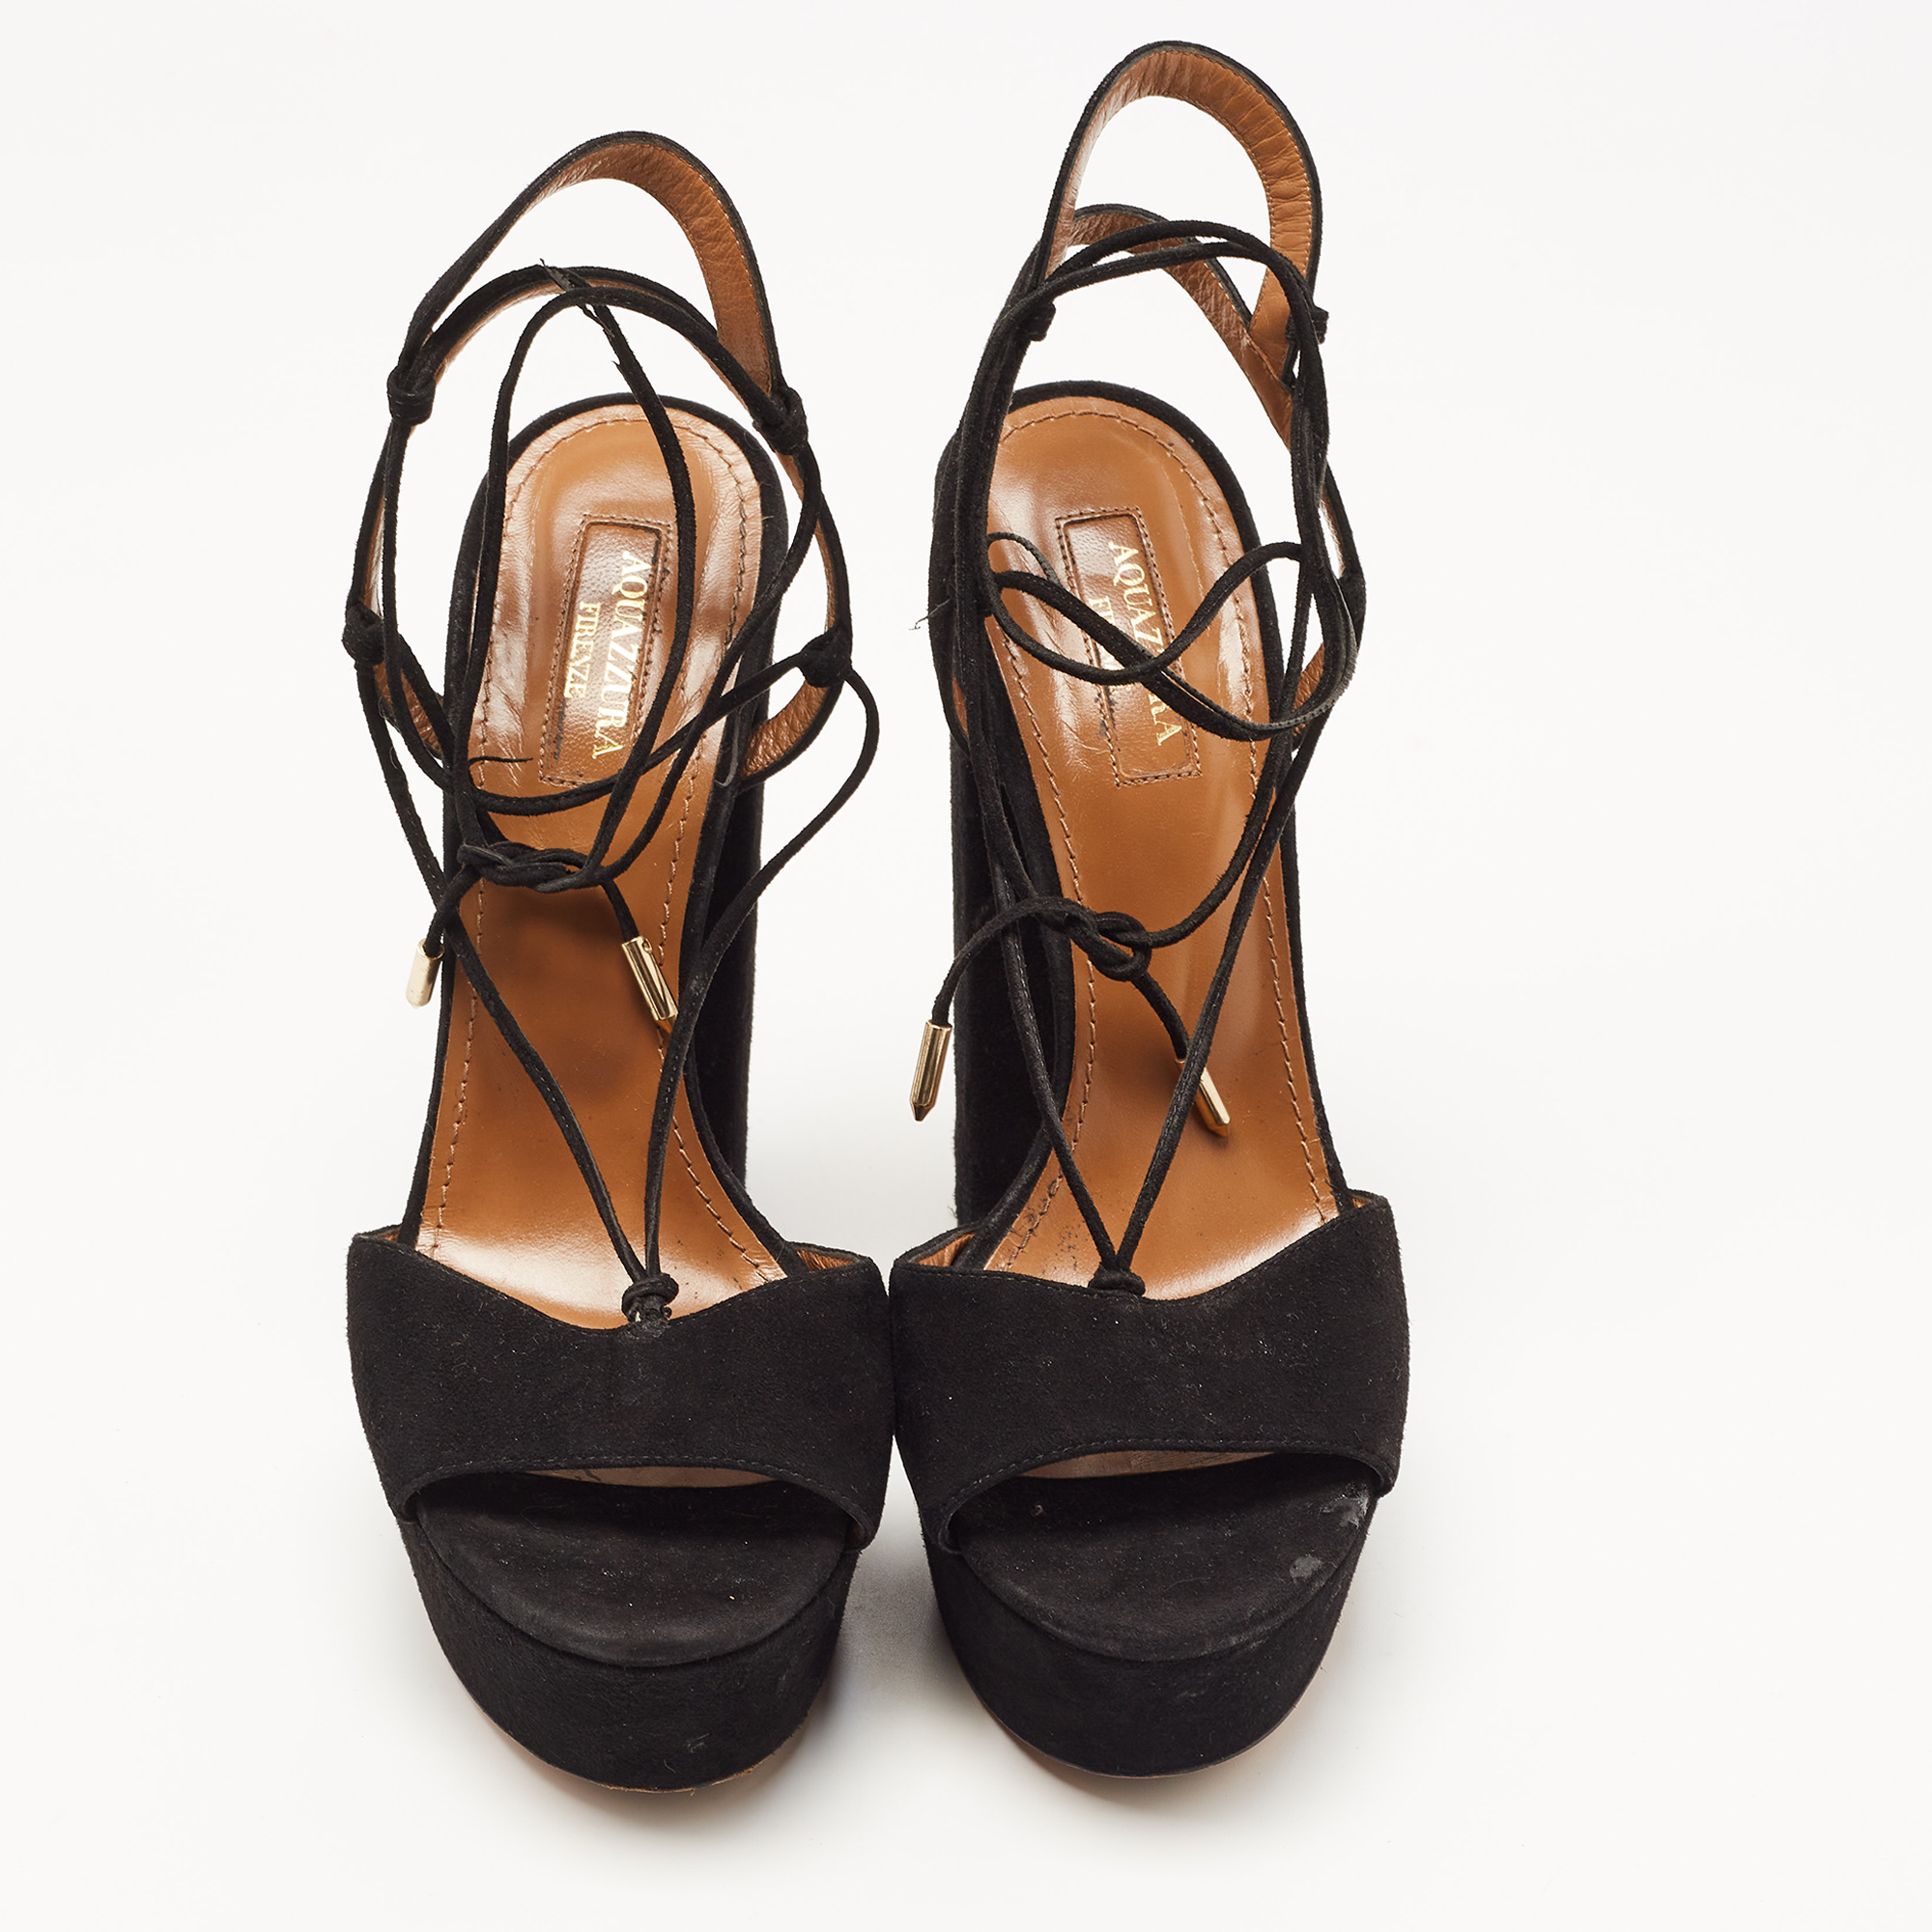 Aquazzura Black Suede Ankle Strap Platform Sandals Size 38